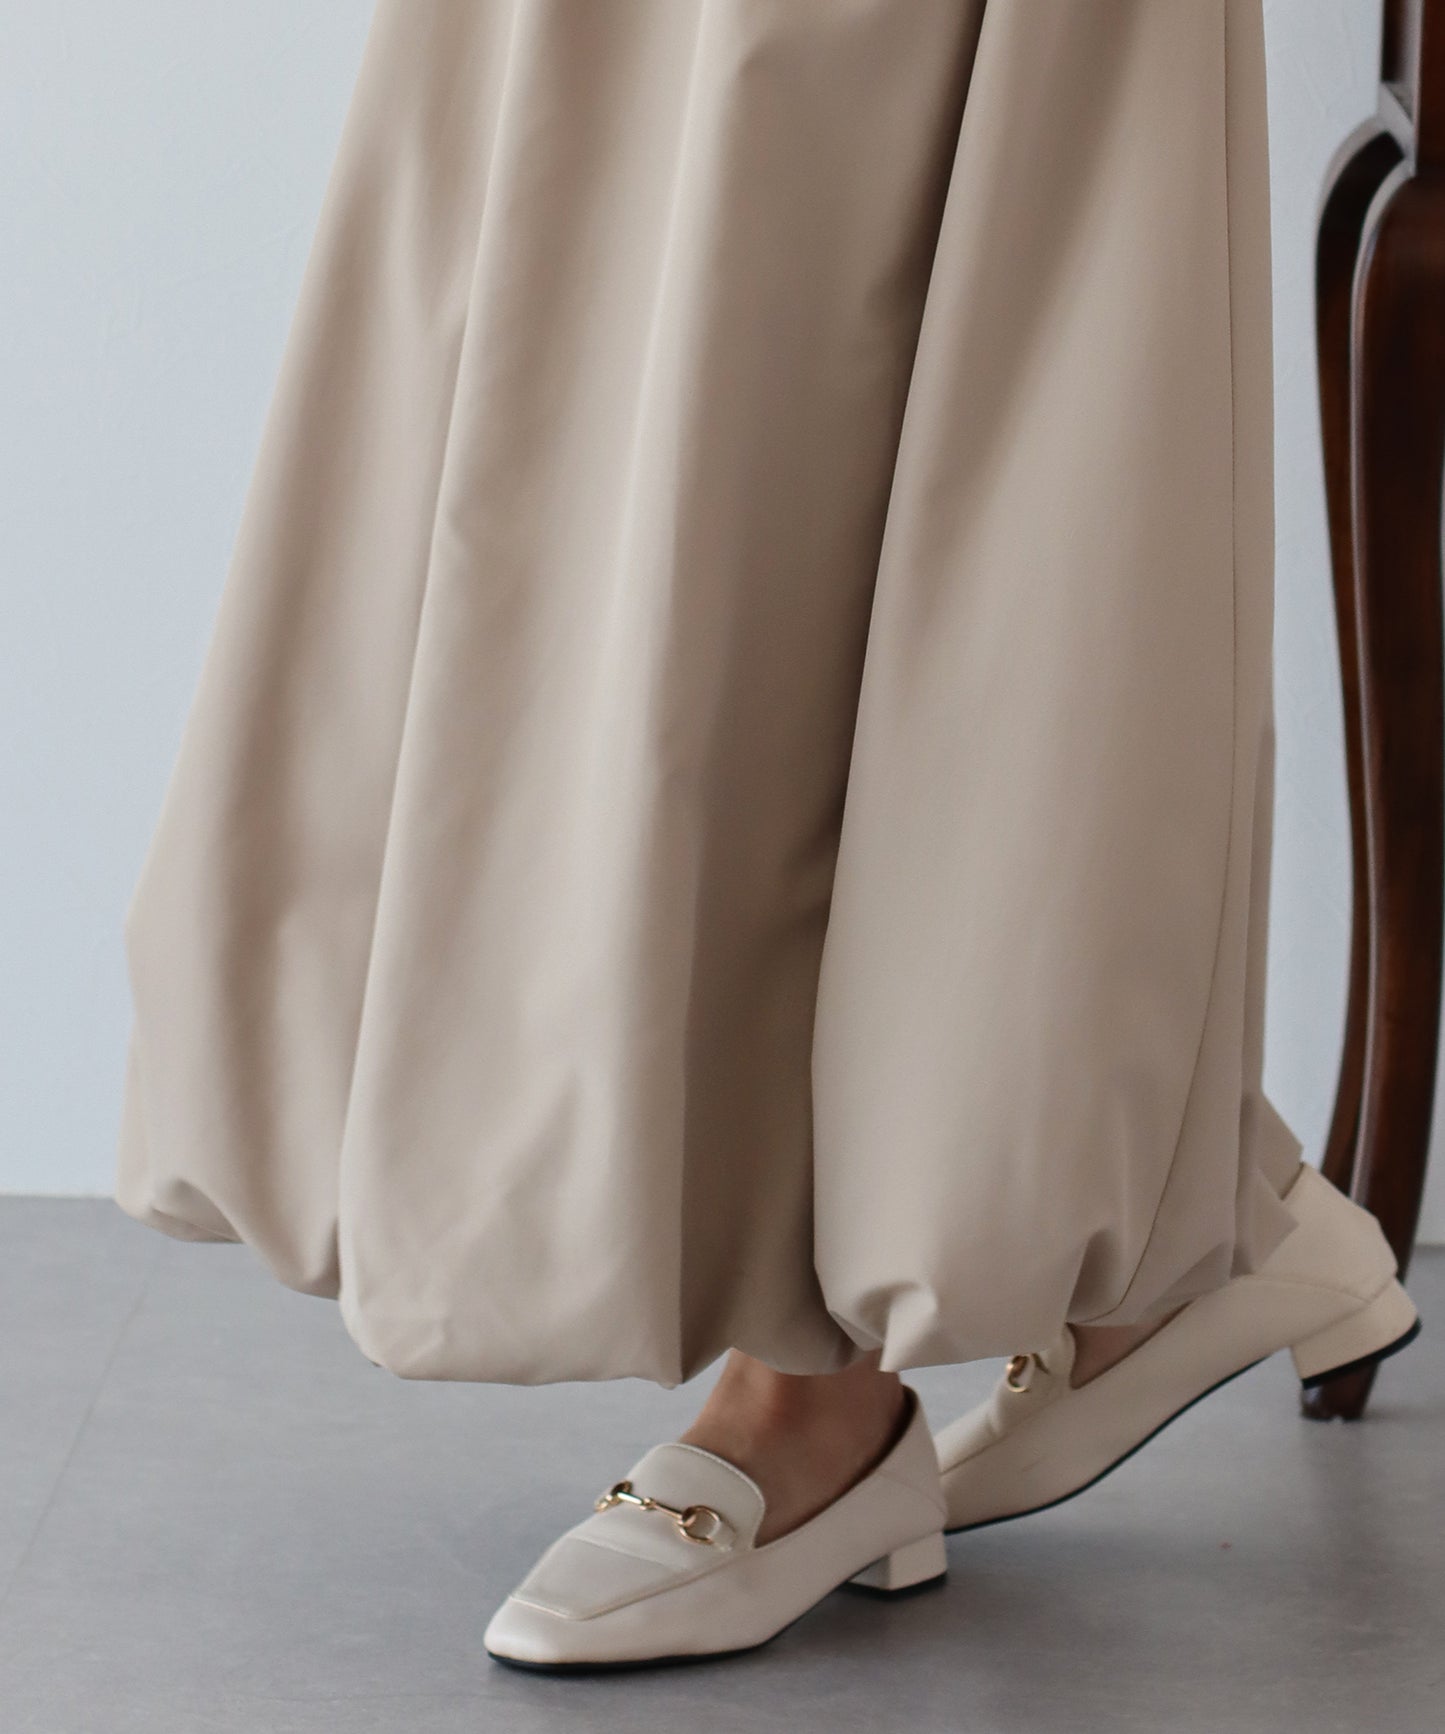 【SALE】エアリーバルーンスカート